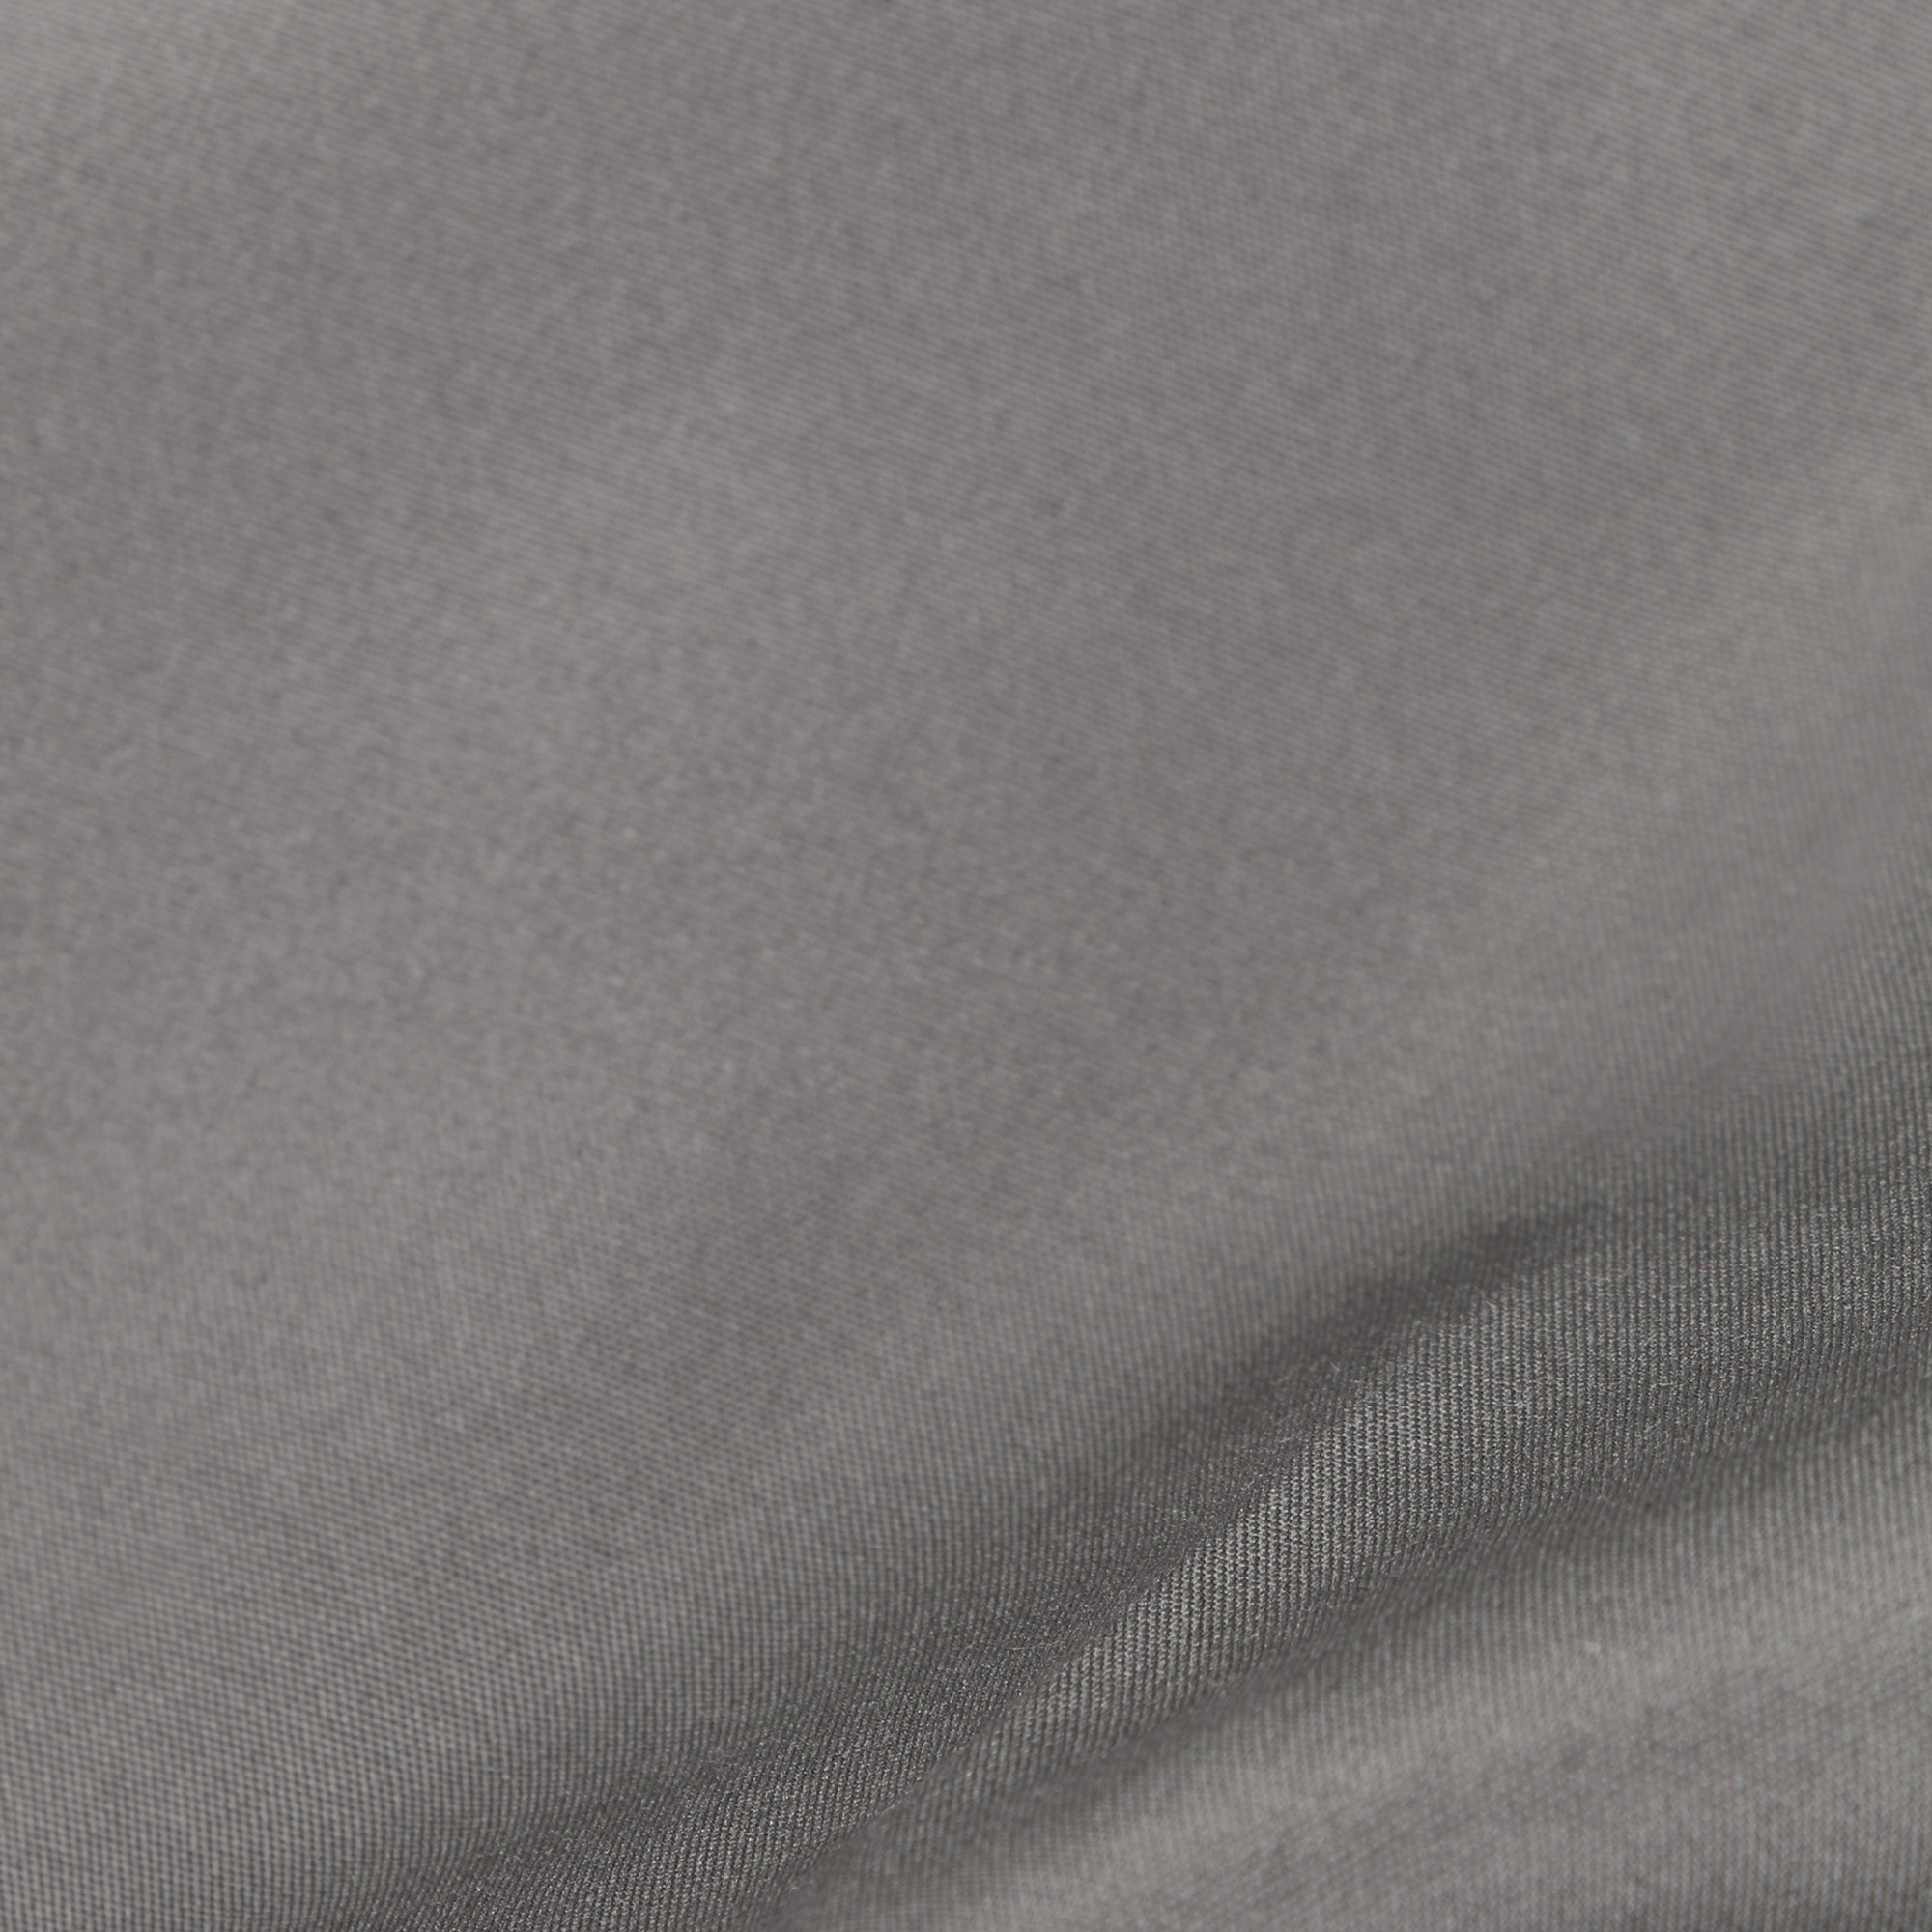 Мужские шорты пляжные Pantelemone PH-114 темно-серые 54, цвет темно-серый, размер 54 - фото 4